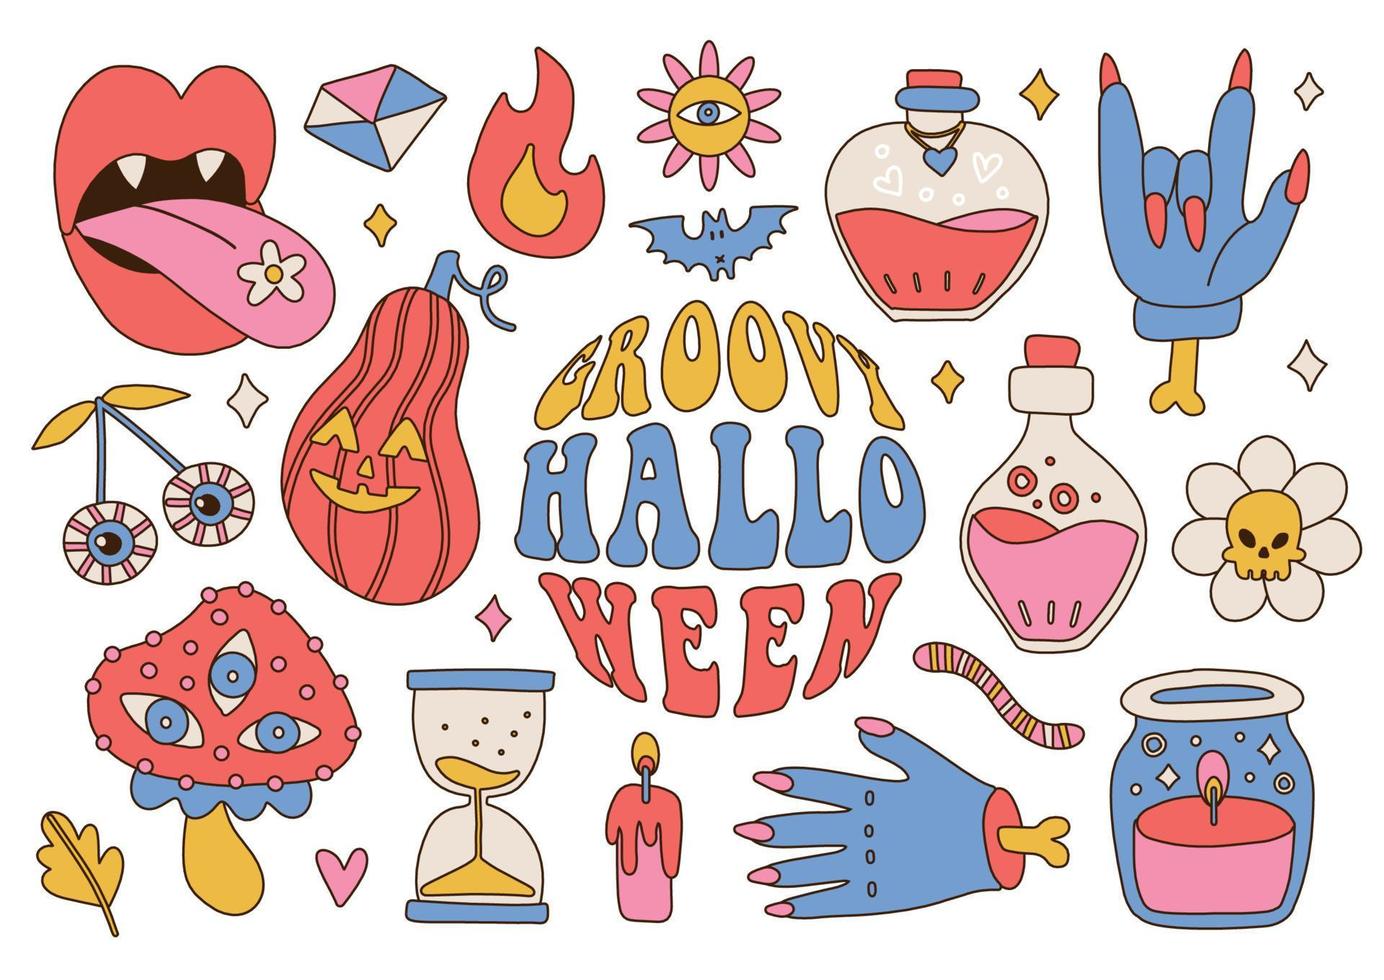 häftig retro 70s halloween stor uppsättning av läskigt element. psychedelic skrämmande klistermärken. hippie stil Semester. zombie ärm, pumpa, trolldryck, svamp, fladdermus, daisy. vektor hand dragen illustration.